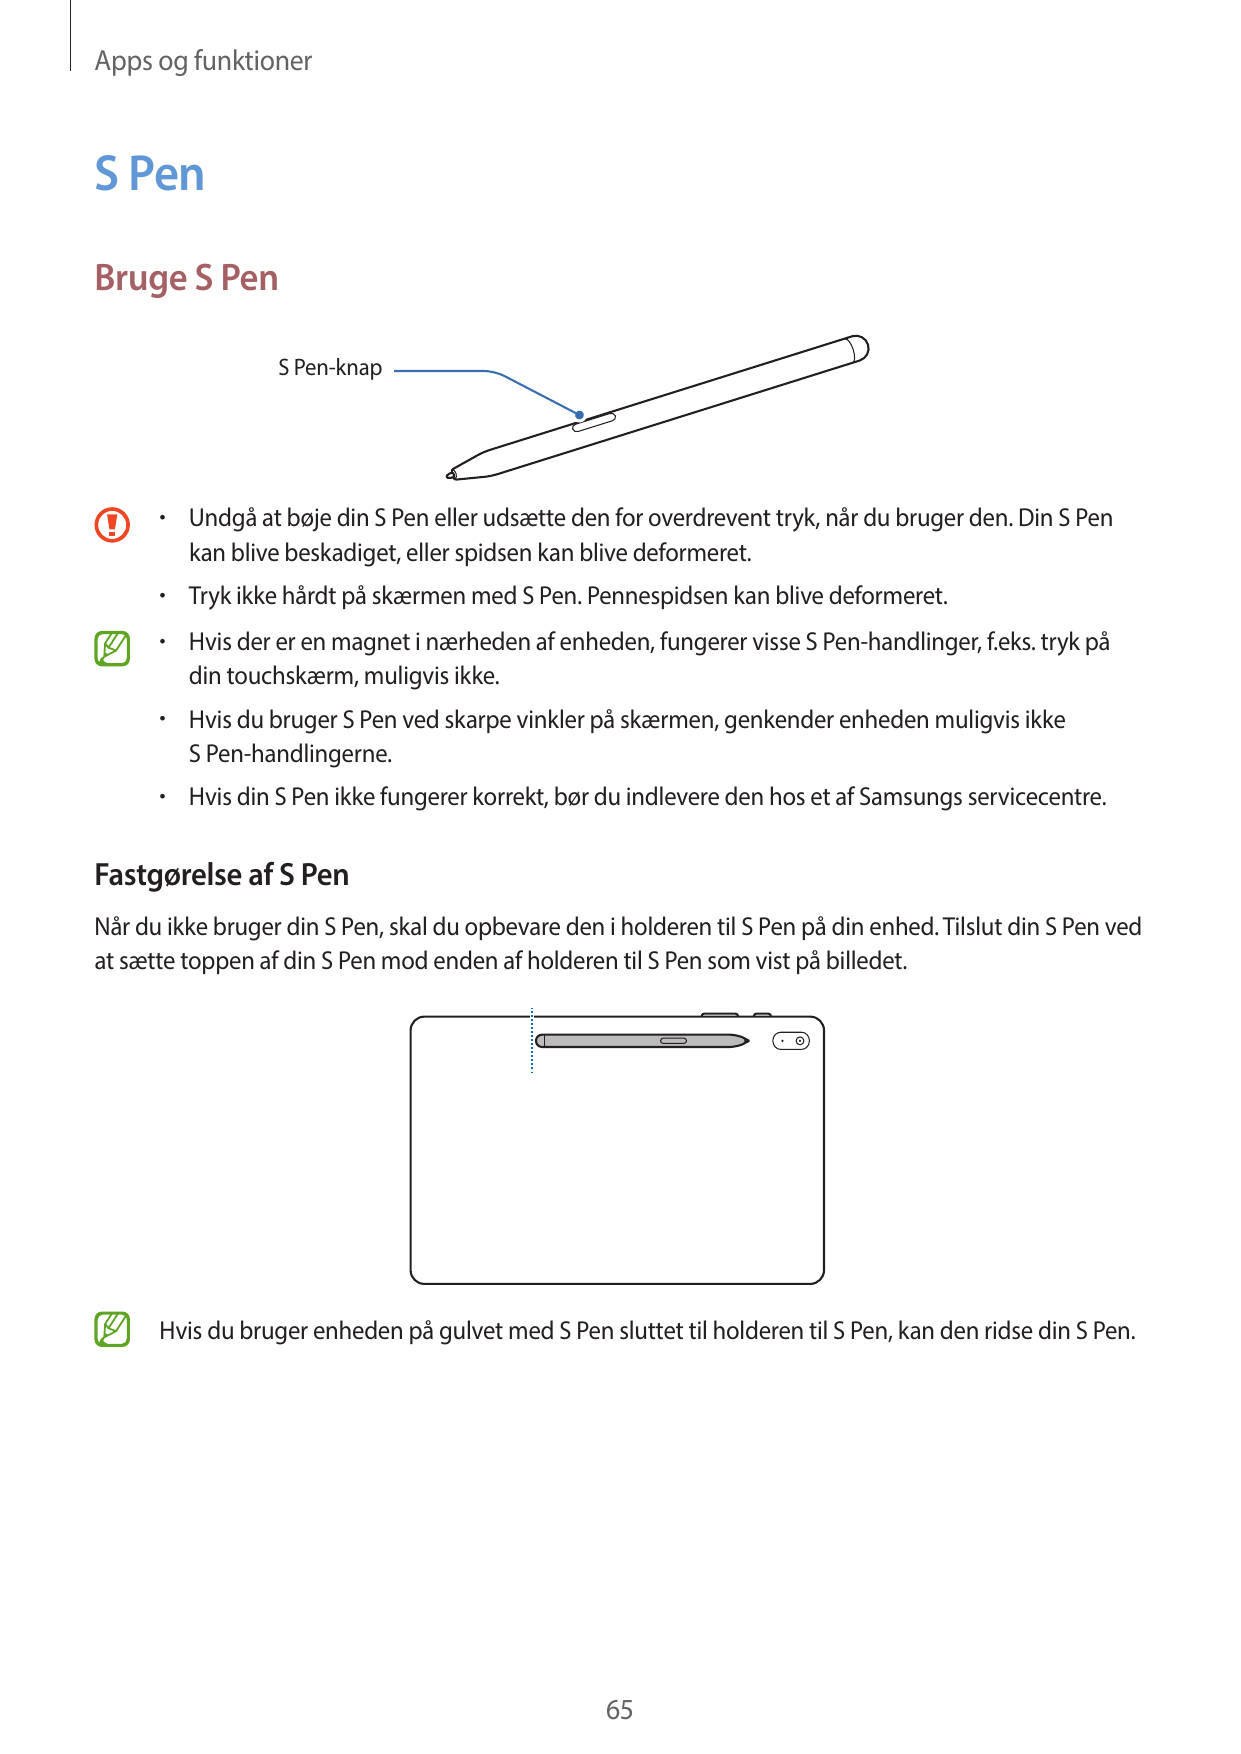 Apps og funktionerS PenBruge S PenS Pen-knap•  Undgå at bøje din S Pen eller udsætte den for overdrevent tryk, når du bruger den